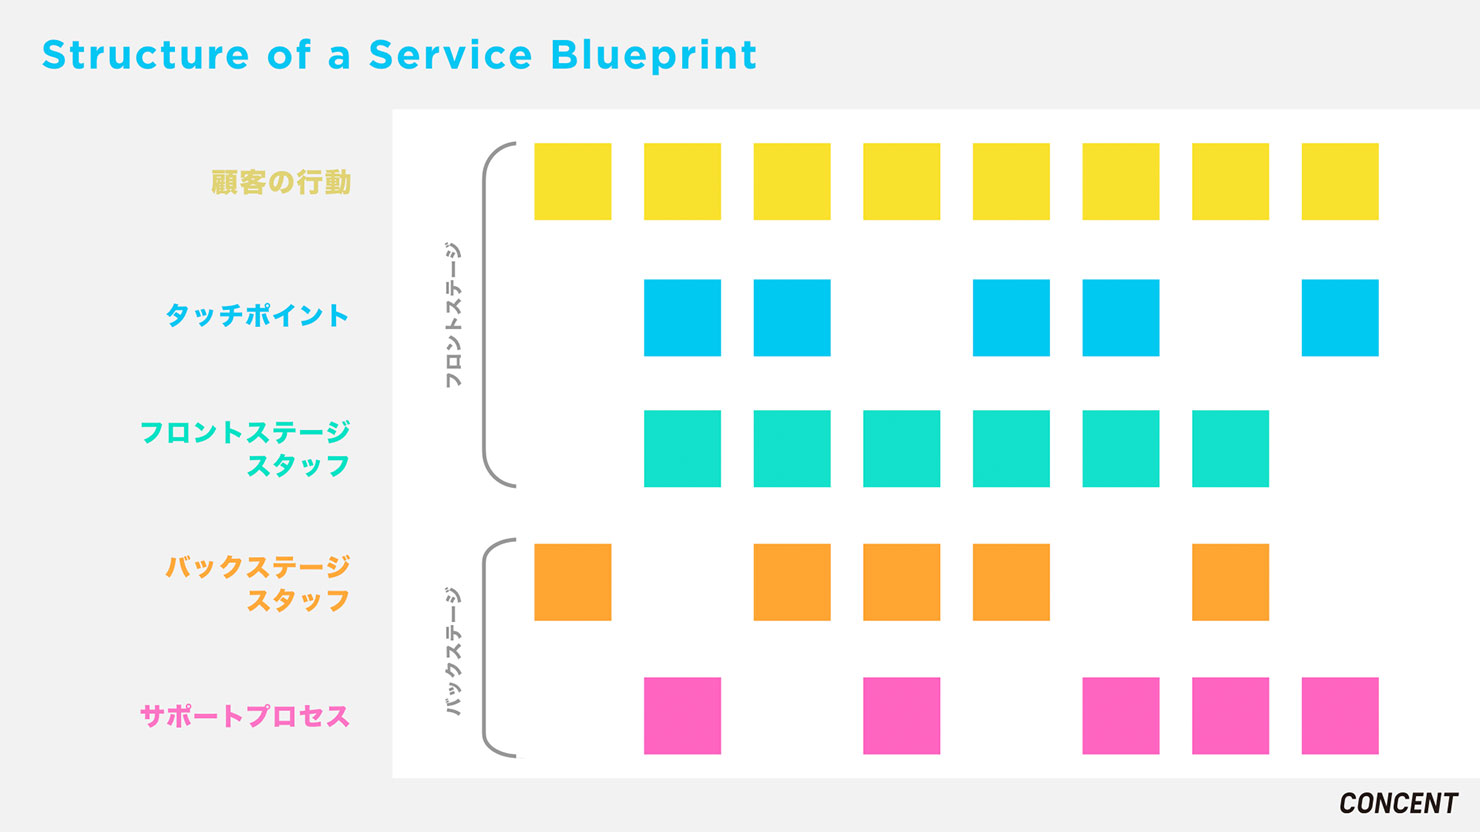 イメージ図：顧客の行動に対して、それぞれのタッチポイントでサービス提供側がどのような行動をすべきか記述されている